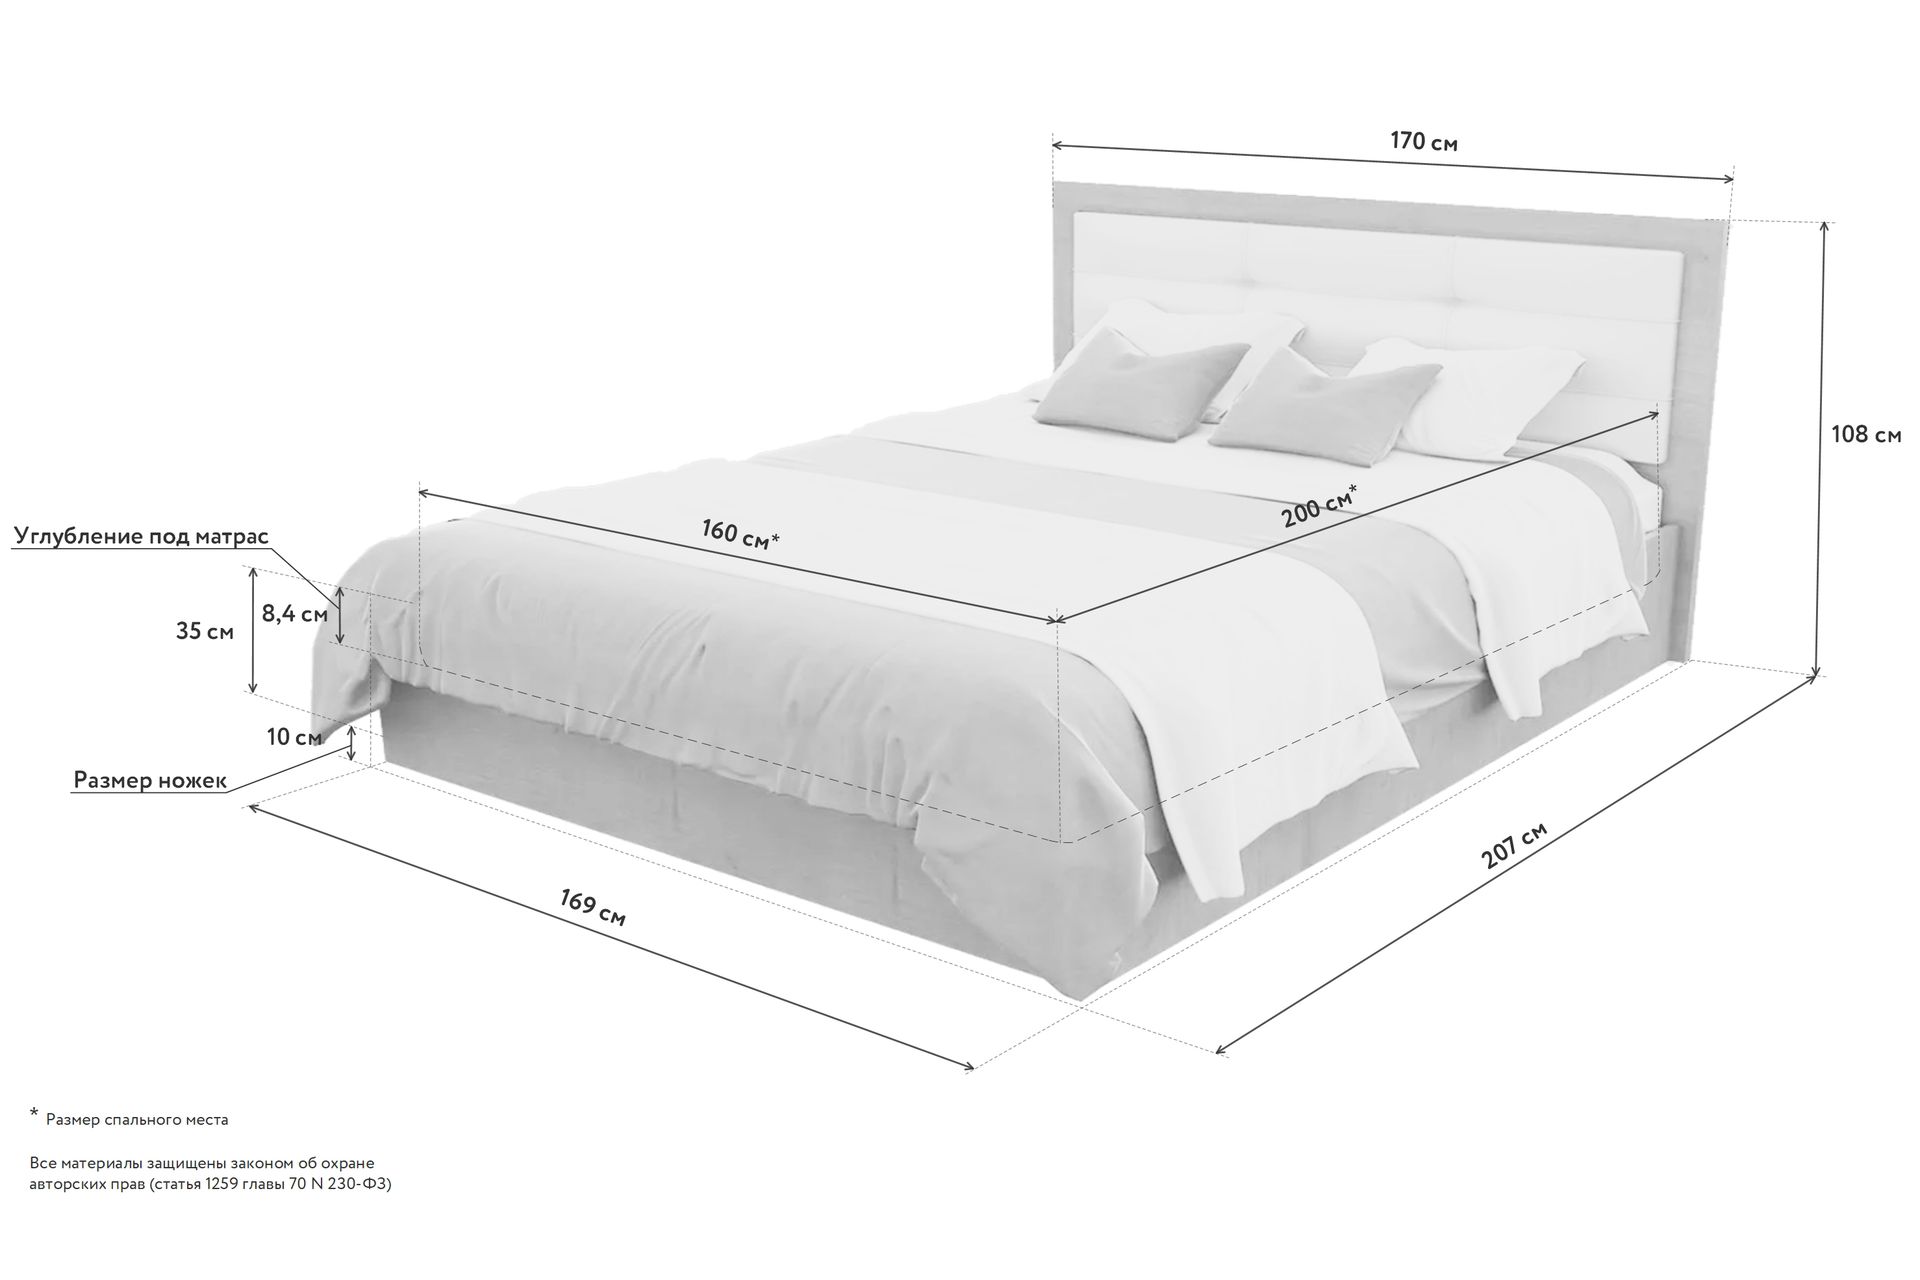 высота кровати вместе с матрасом